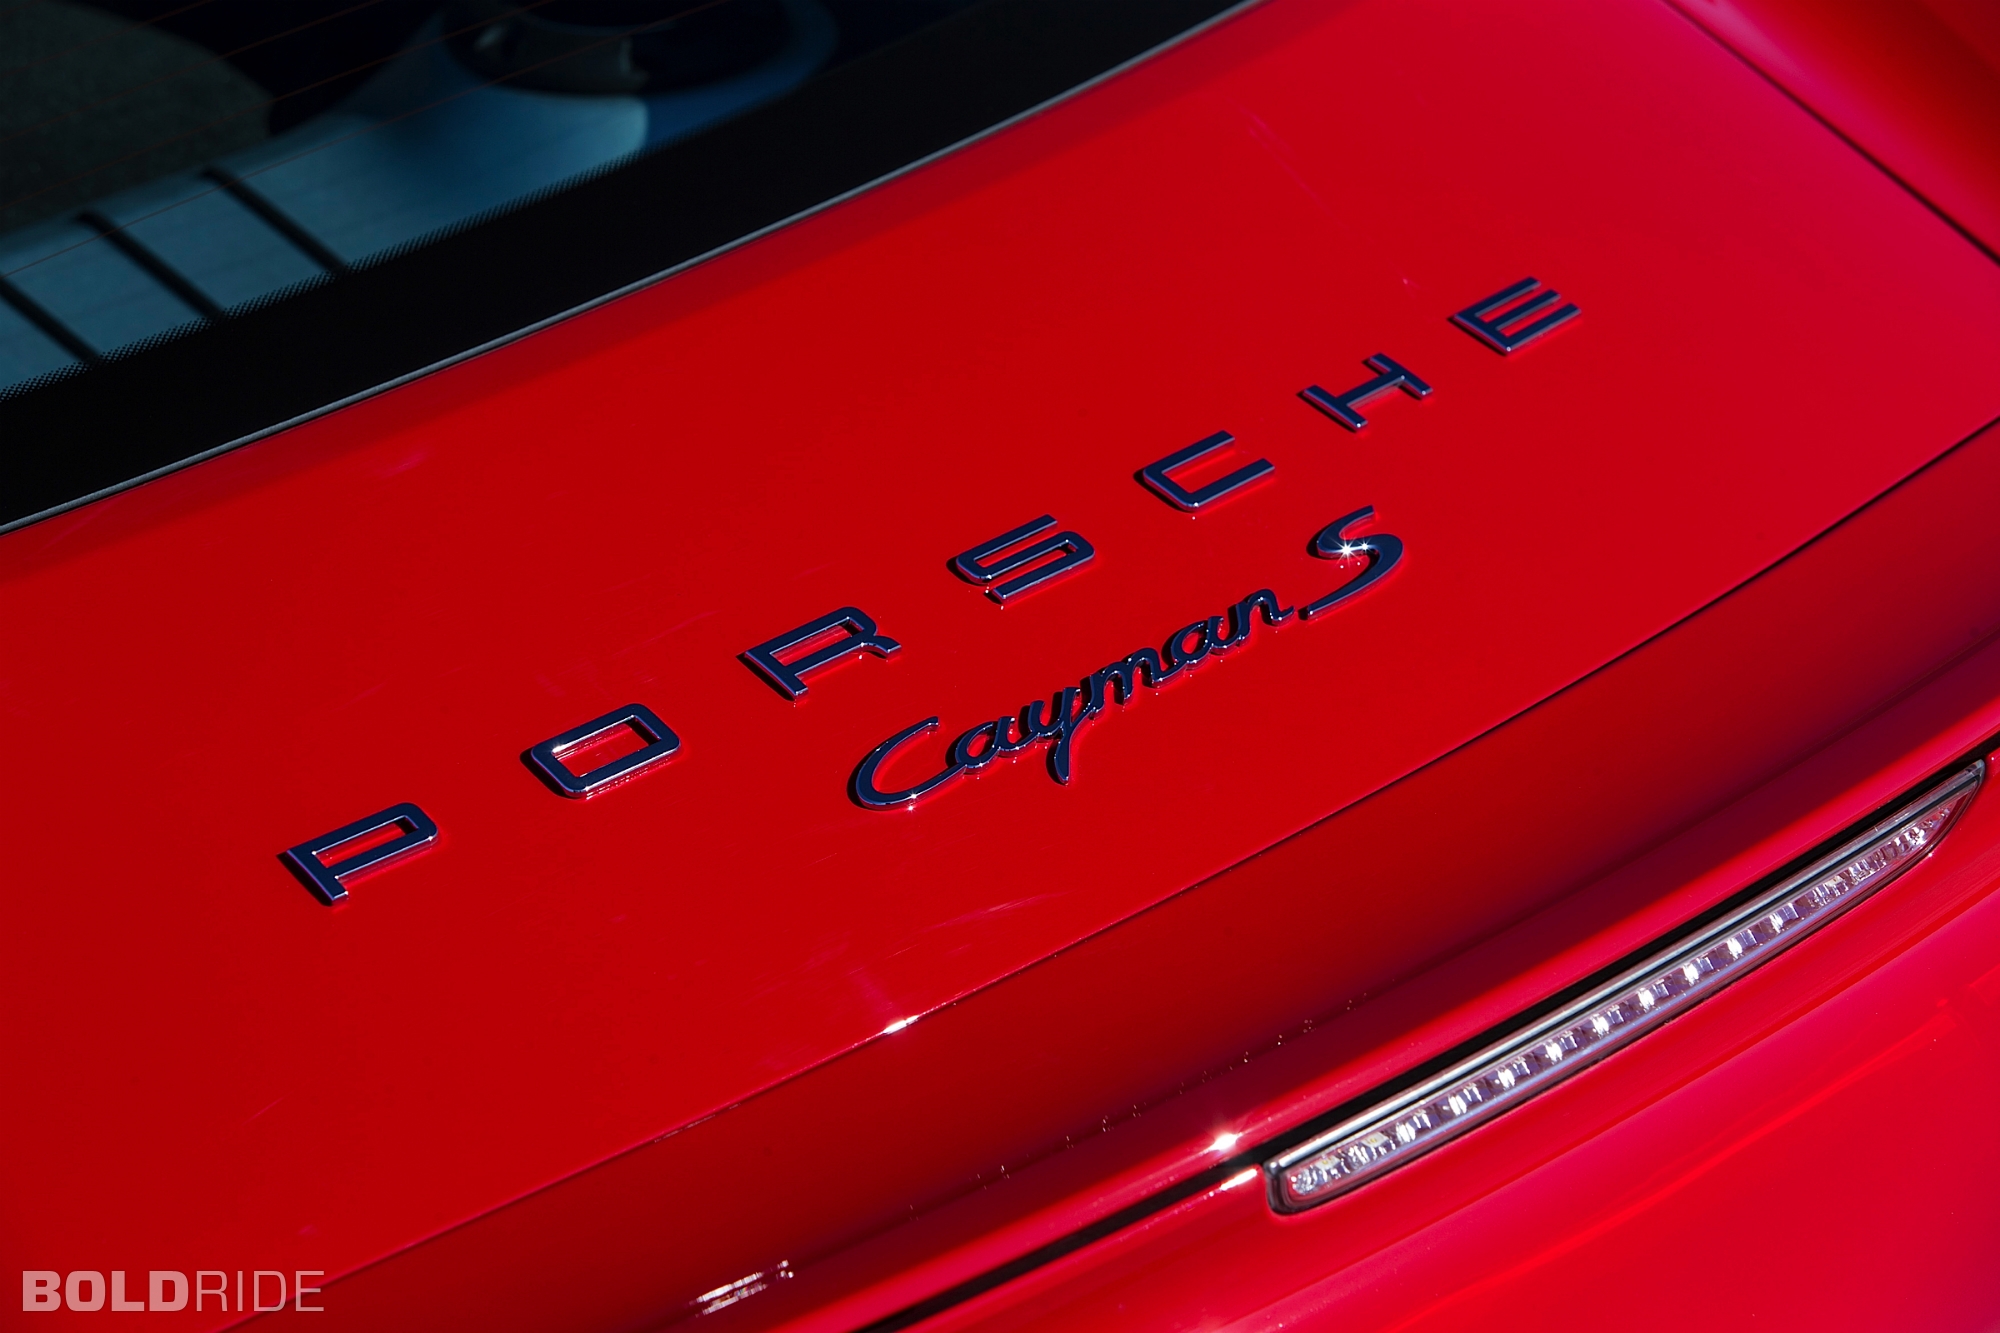 2014, Porsche, Cayman, S, Sportcar Wallpaper